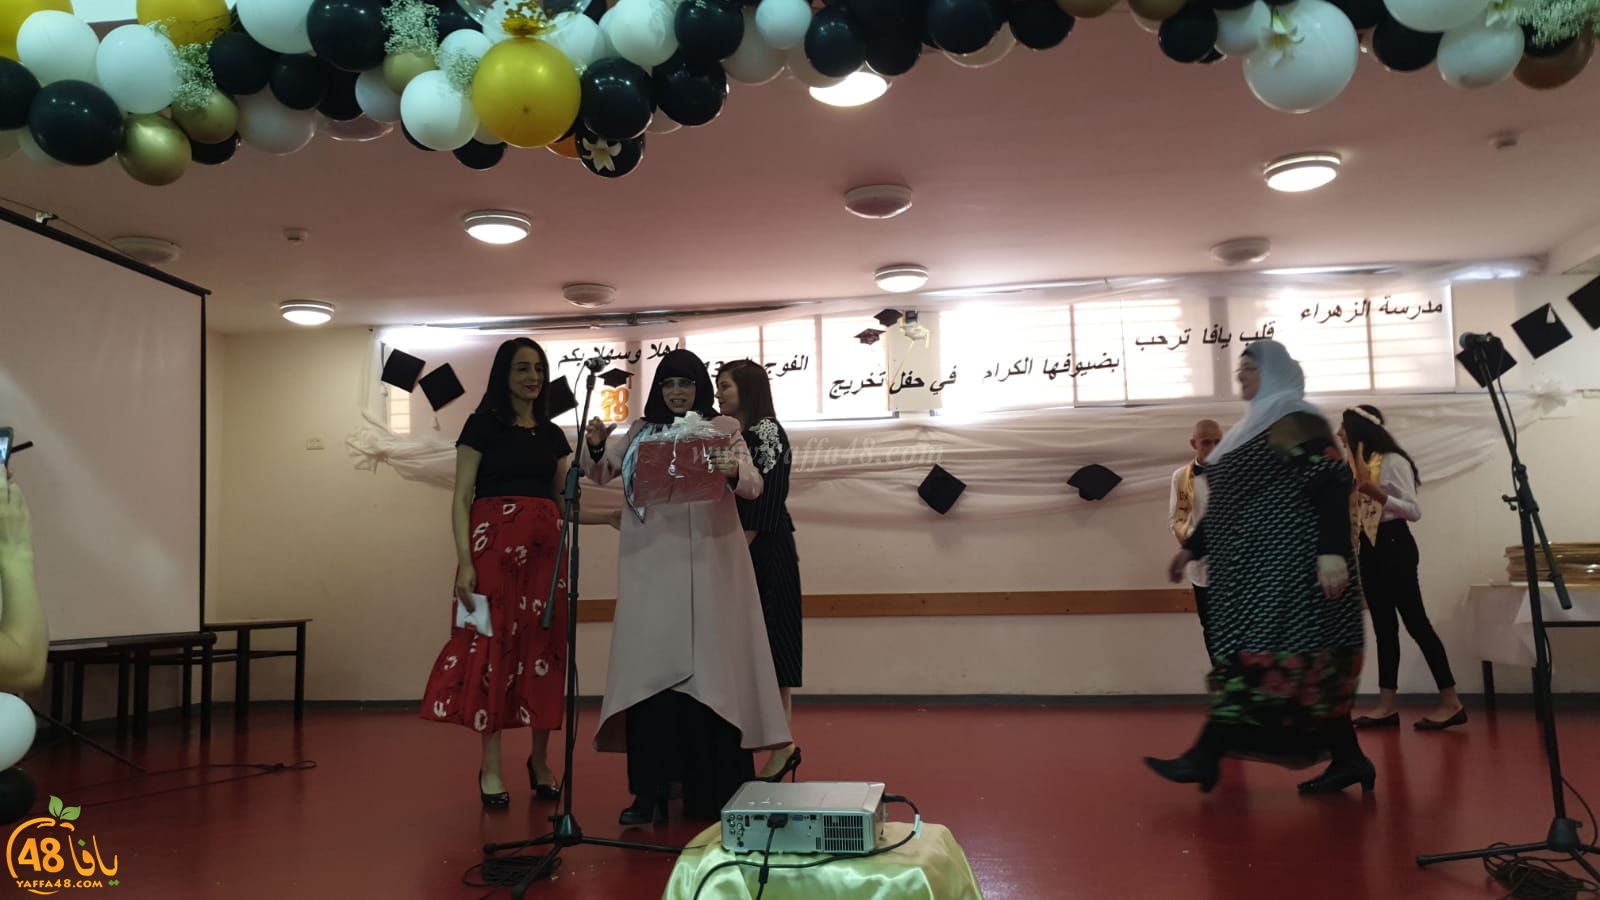 بالفيديو: مدرسة الزهراء الابتدائية بيافا تحتفل بتخريج طلابها ضمن الفوج الـ13 والأخير